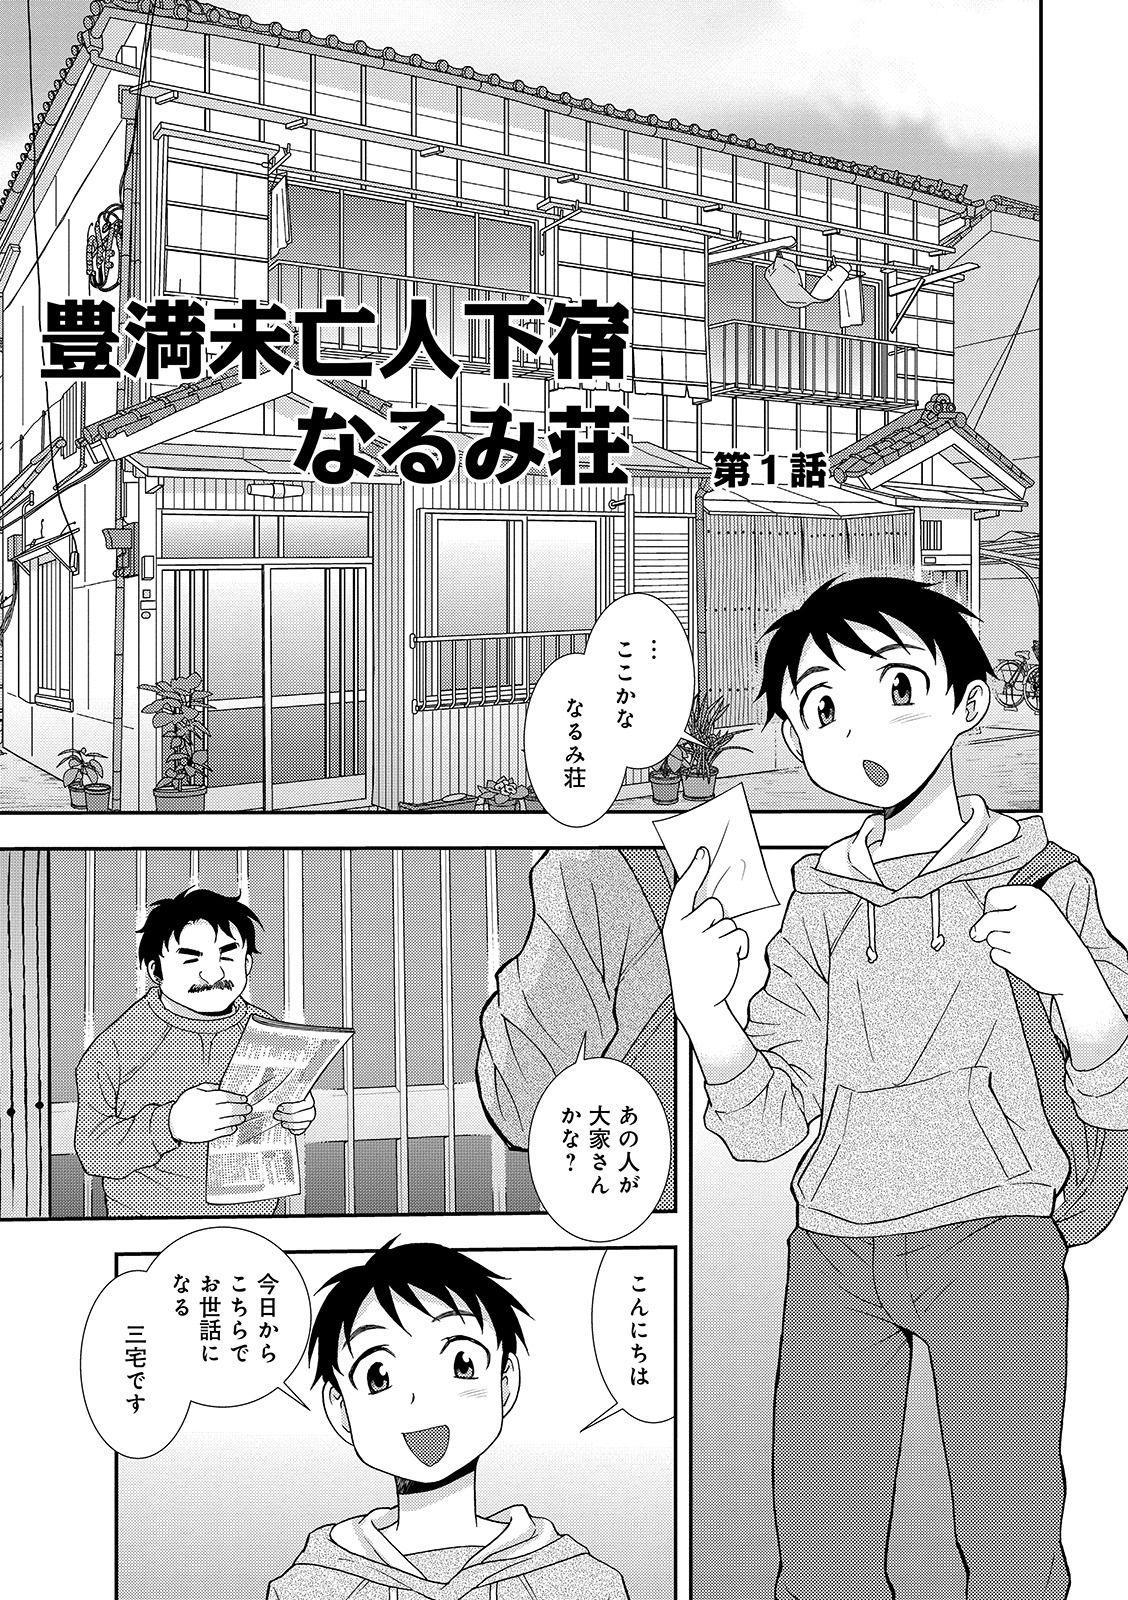 Bubblebutt Houman Miboujin Geshuku Narumi-sou Punishment - Page 3